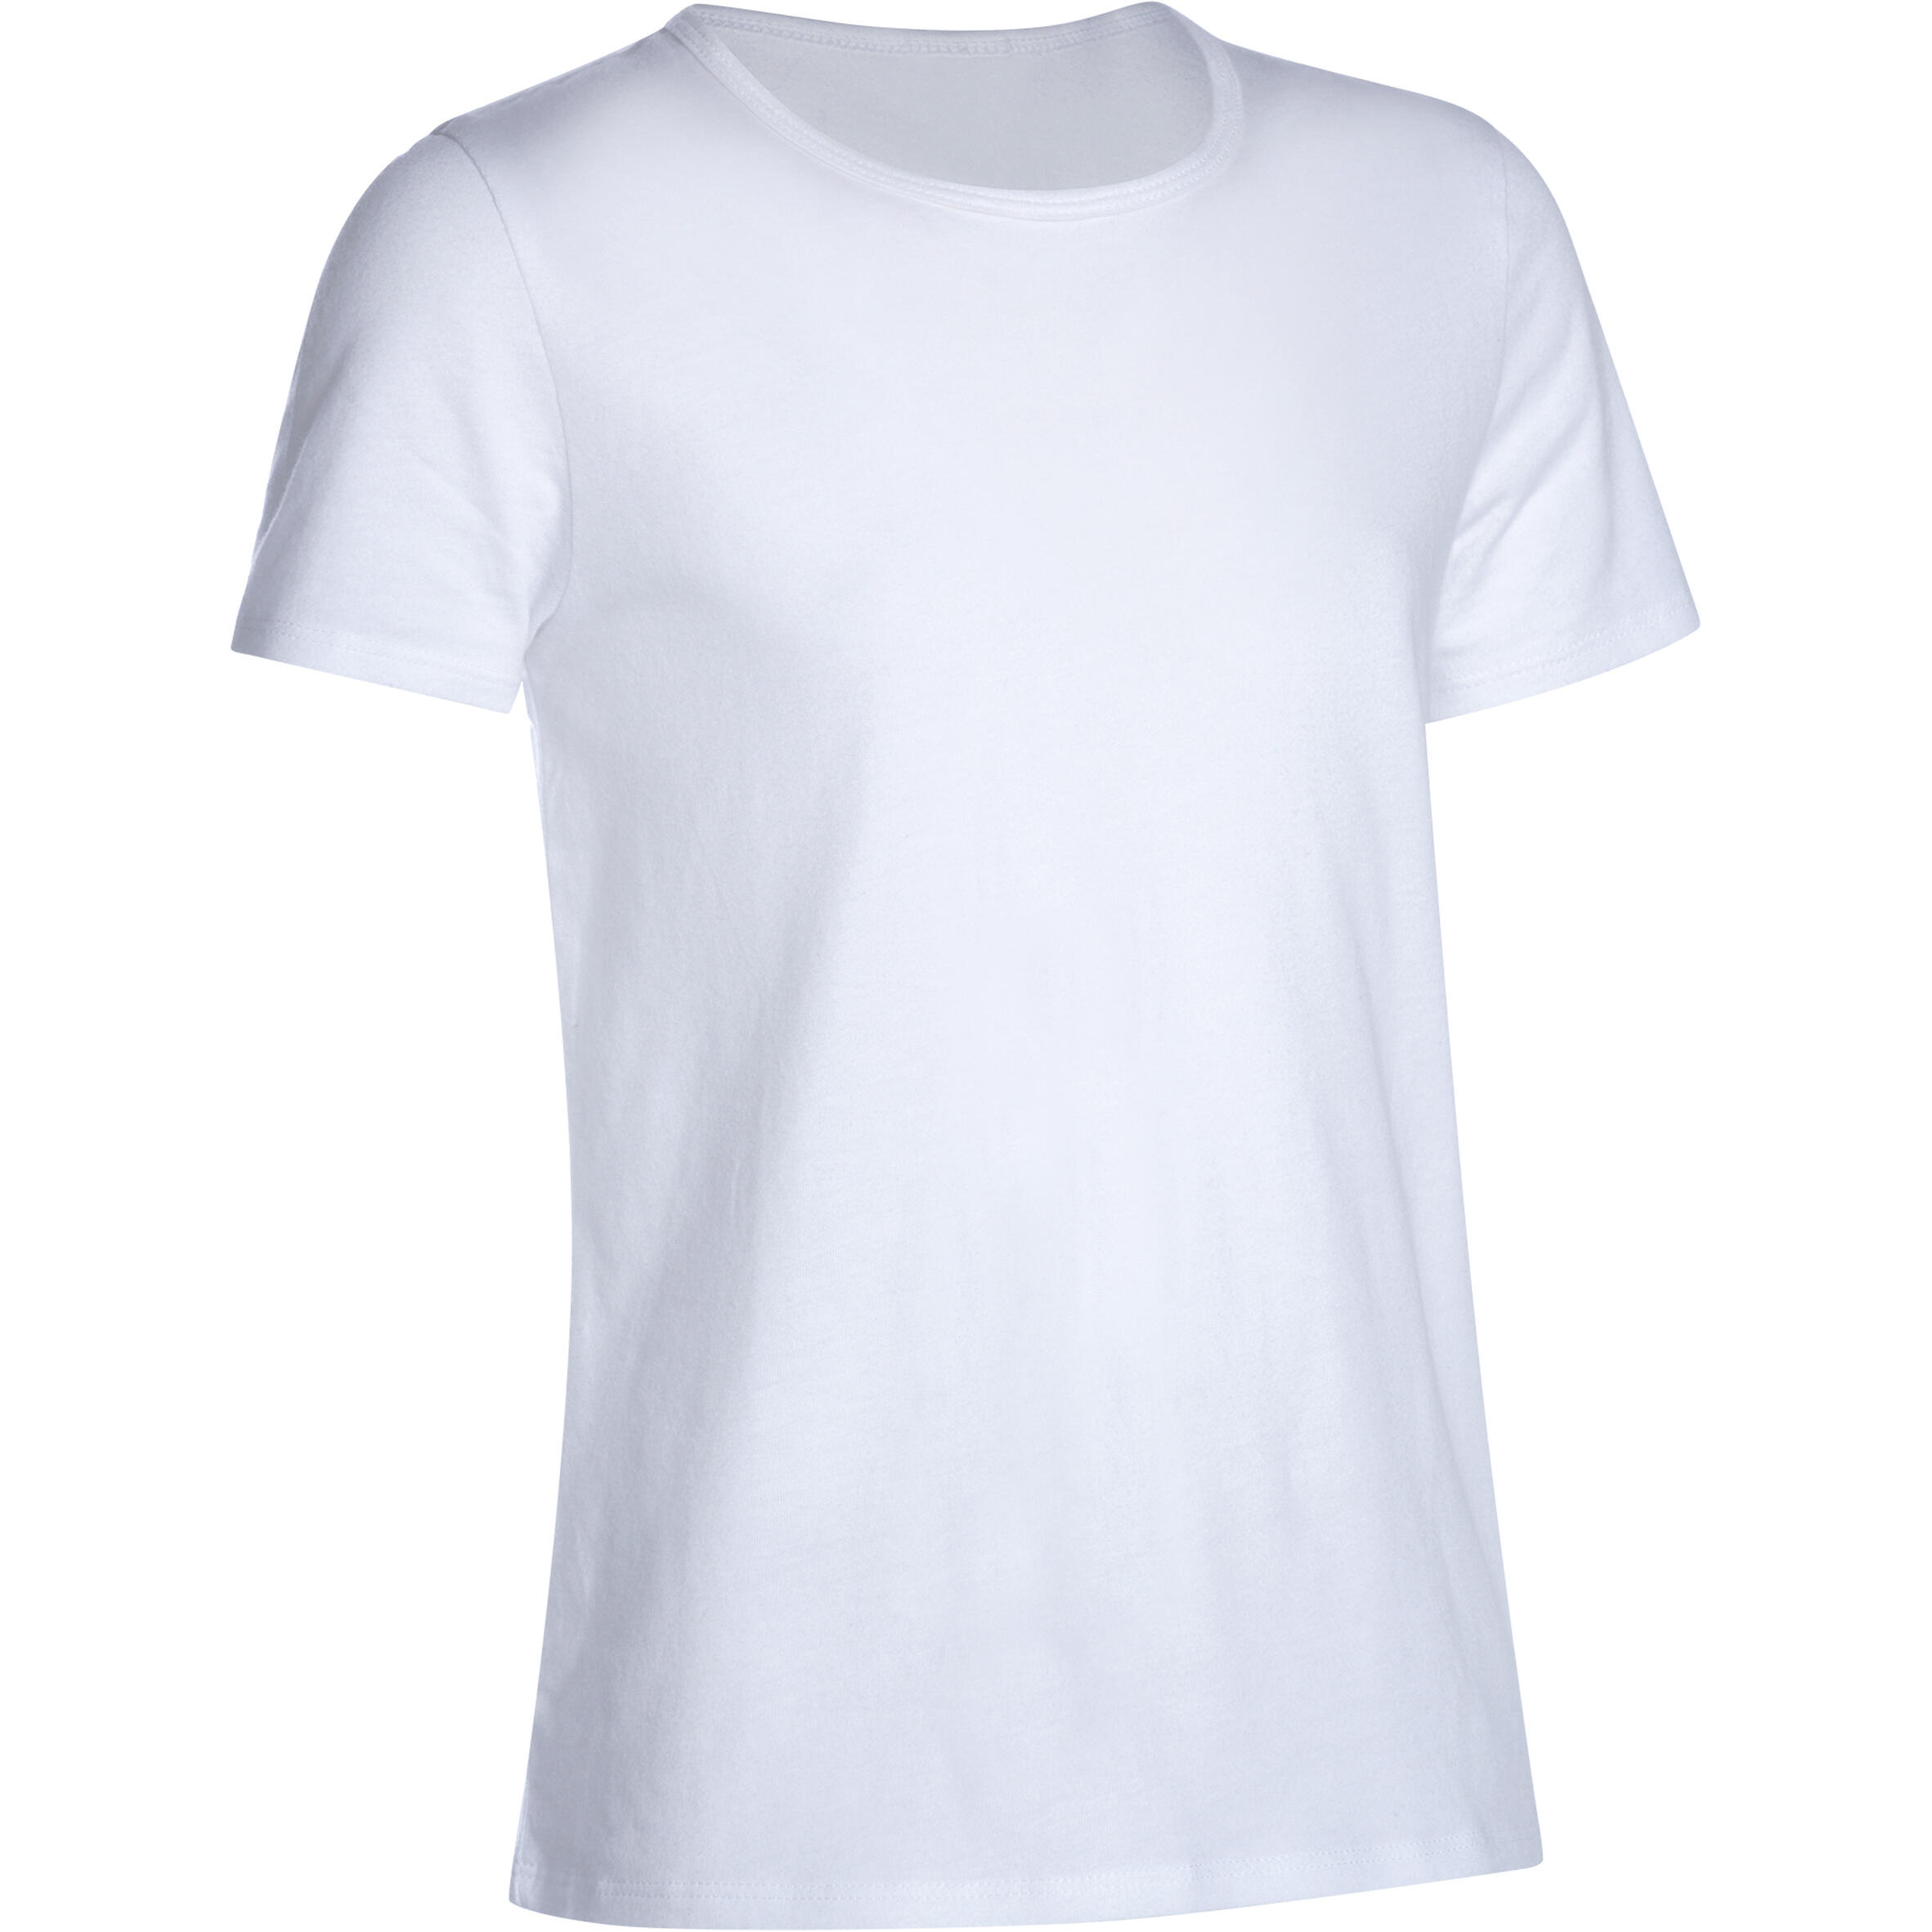 DOMYOS Girls' 100 Short-Sleeved Gym T-Shirt - White